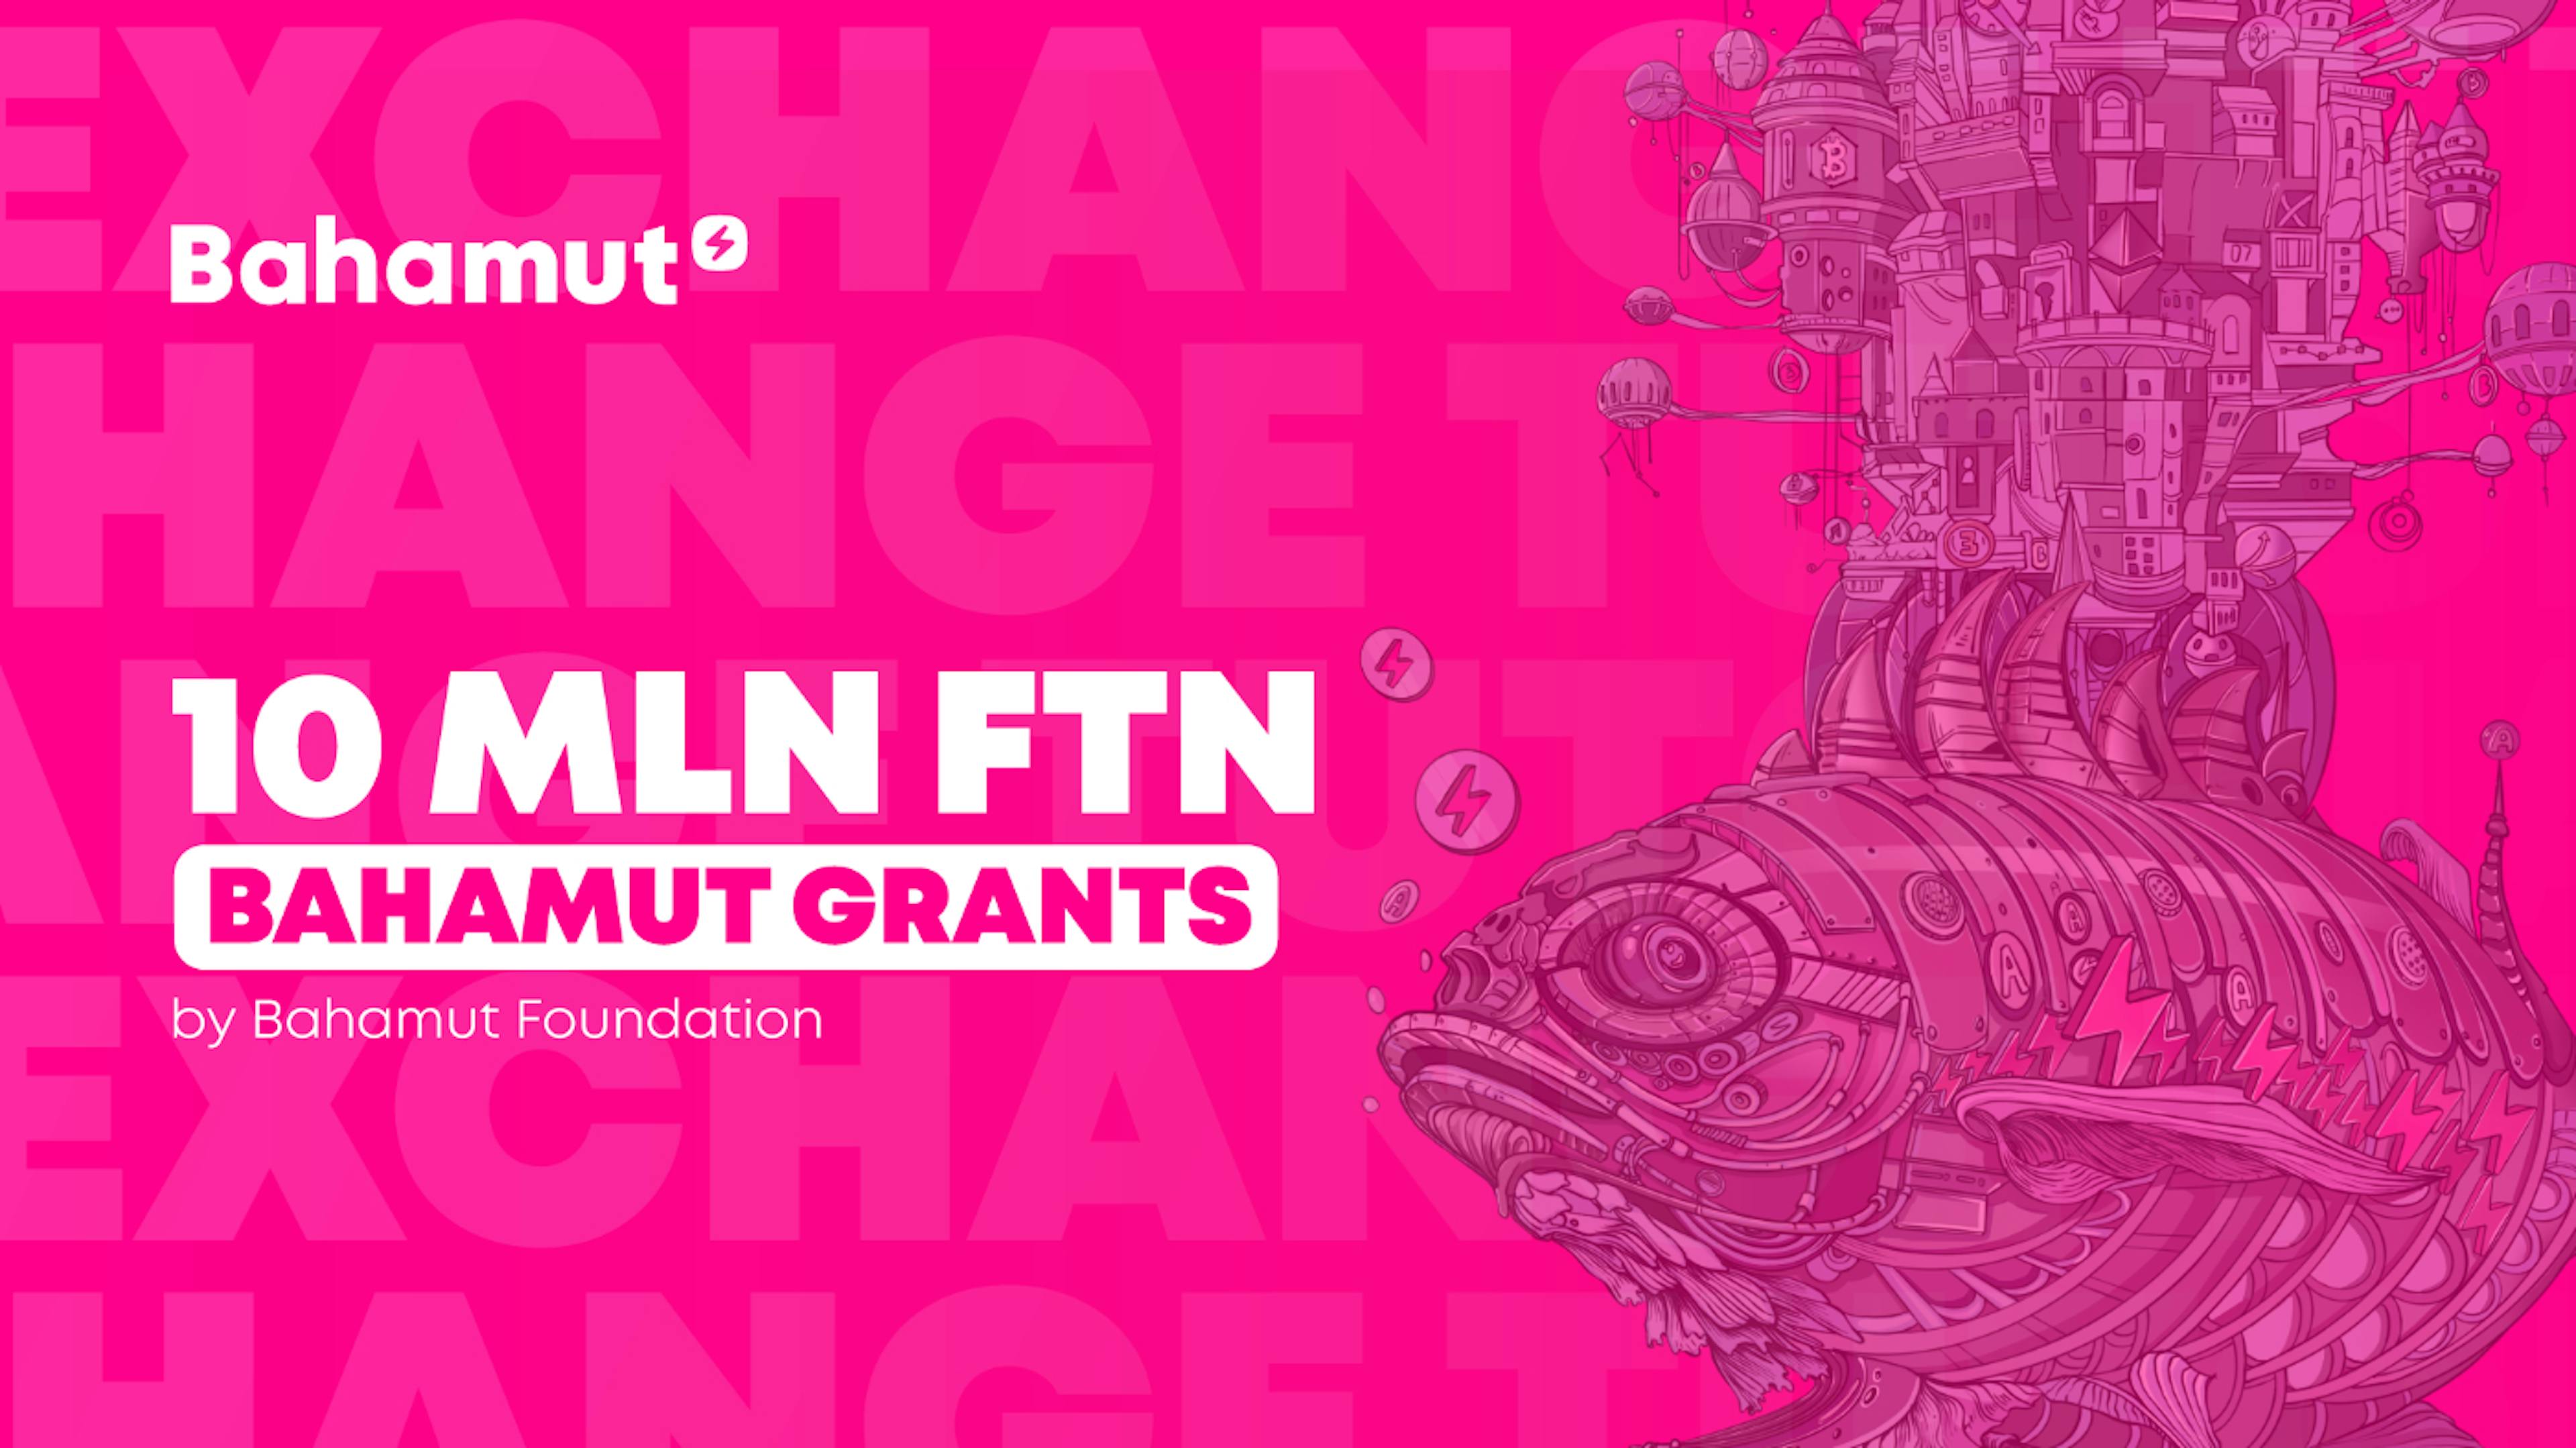 featured image - Quỹ Bahamut công bố khởi động Chương trình tài trợ Bahamut trị giá 10 triệu đô la FTN để phát triển